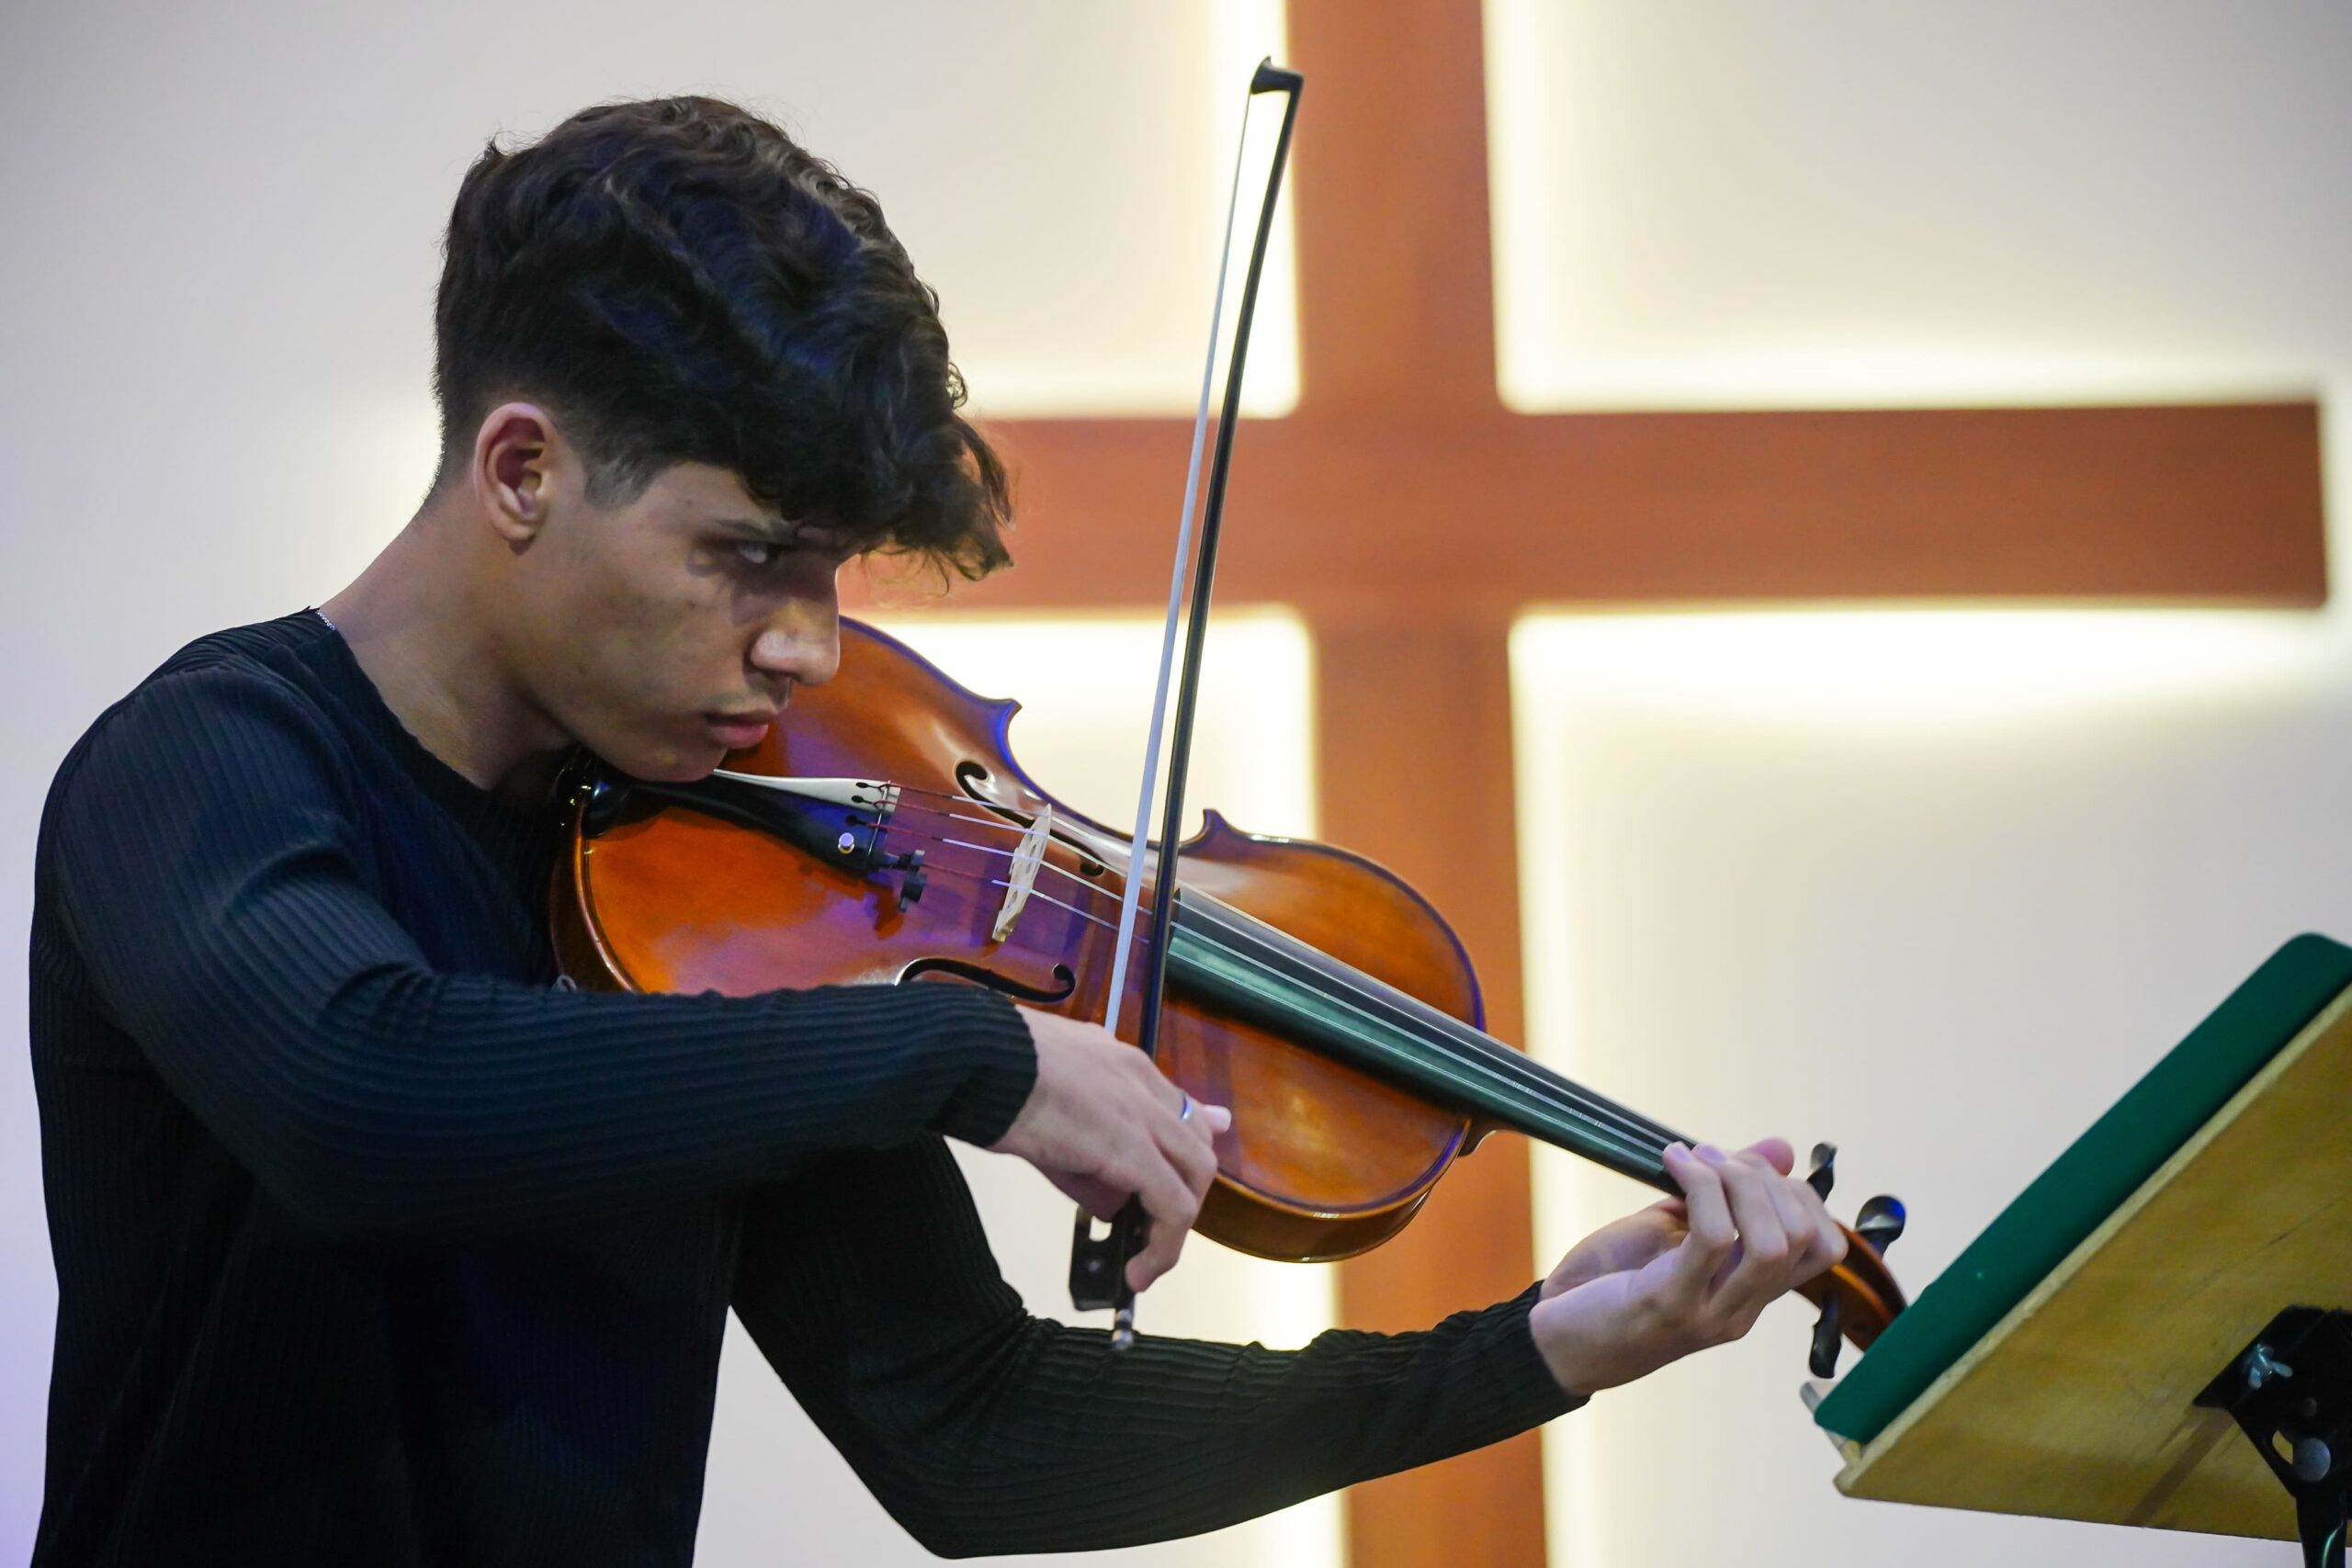 Jovem violista do sertão da Paraíba é grande promessa da música erudita, diz idealizador do FEMUSC